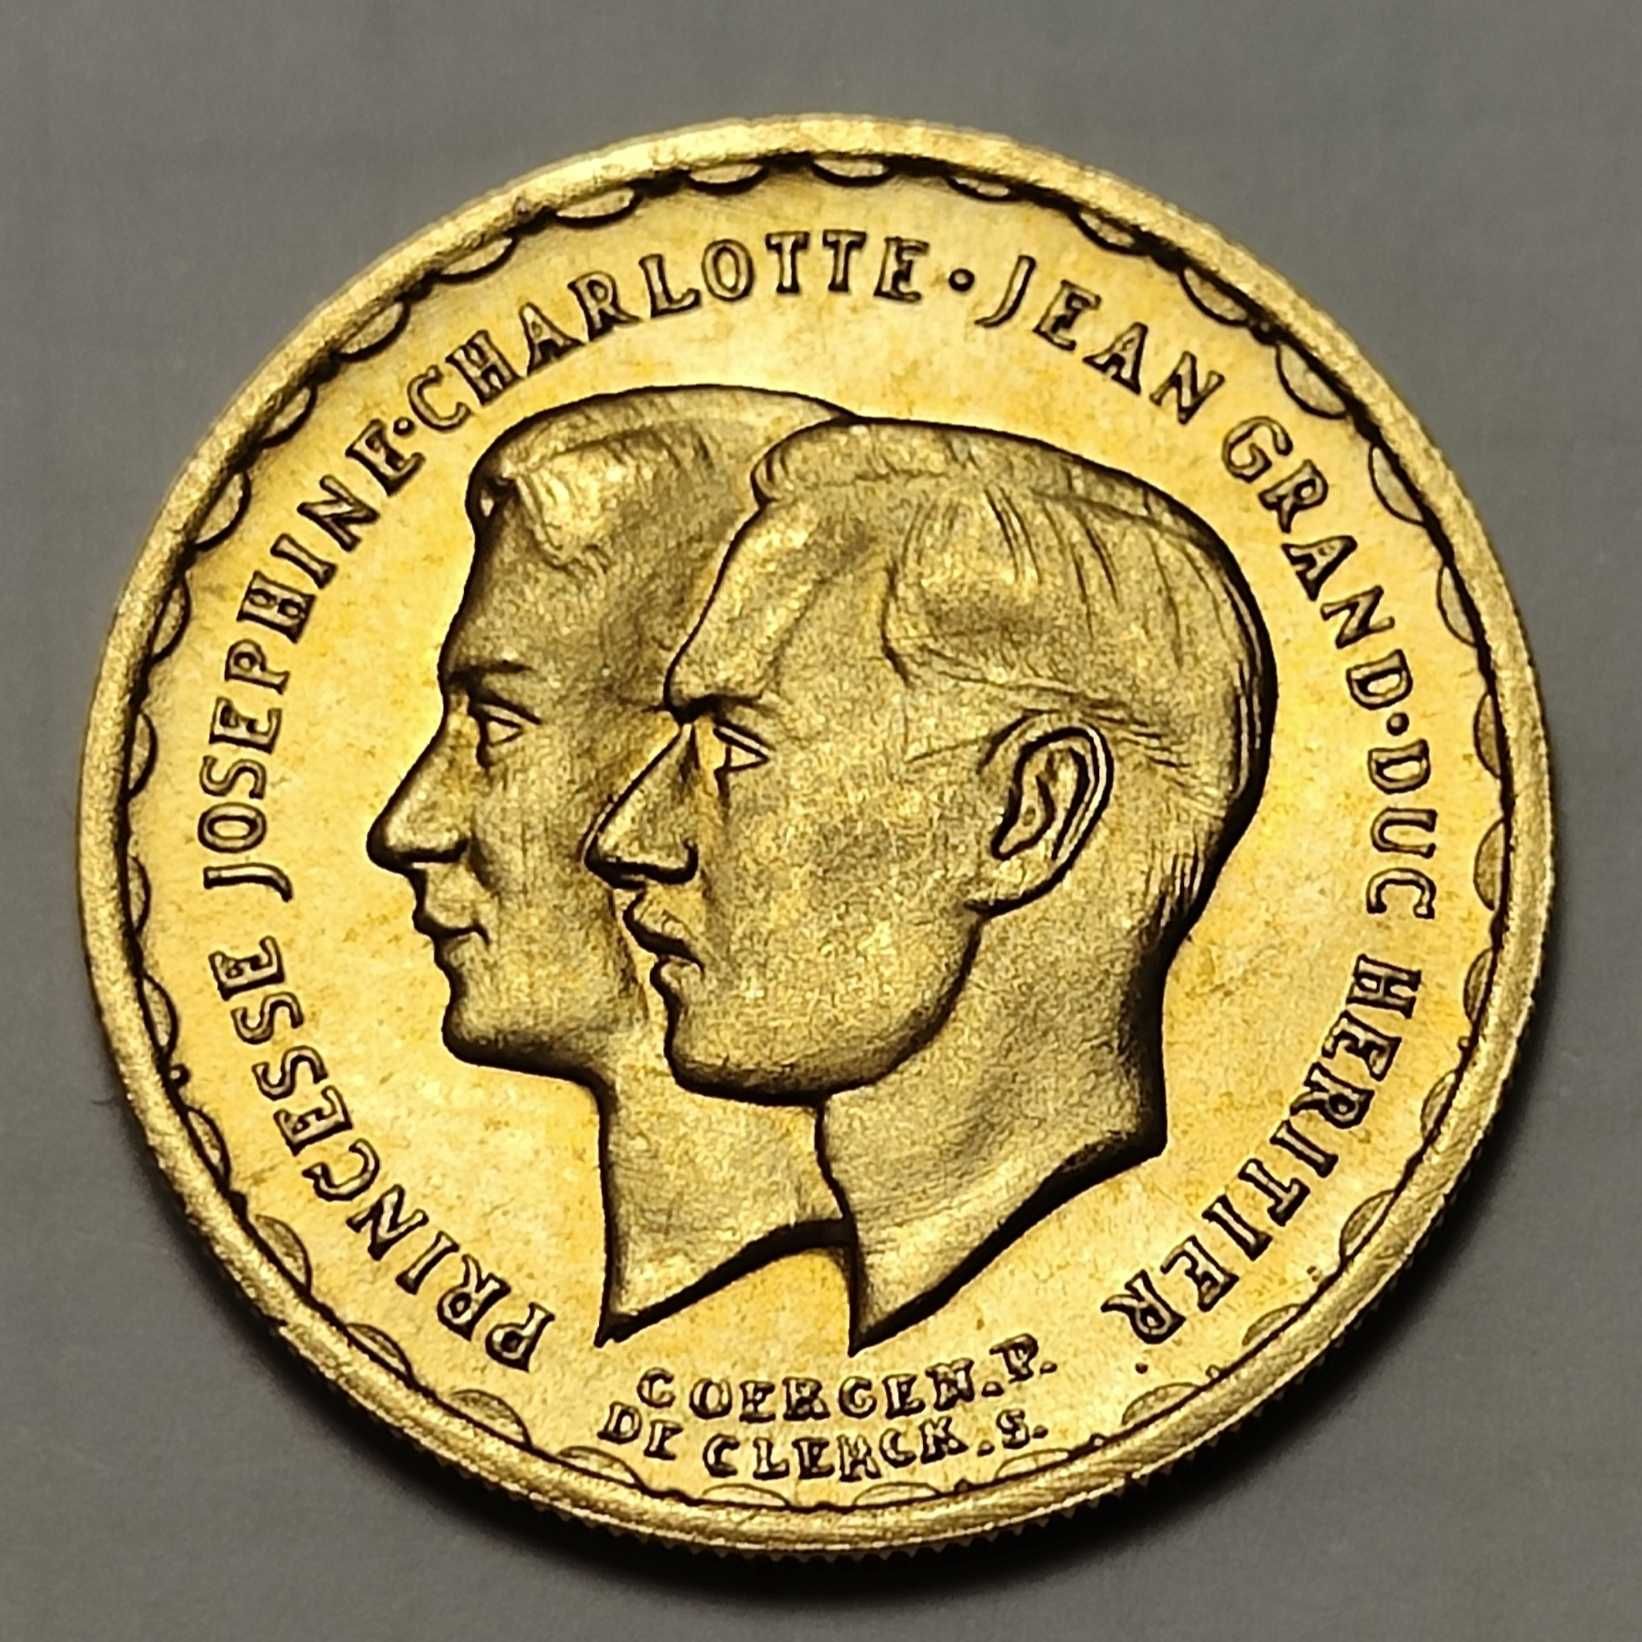 20 франков 1953, 1964 Люксембург, Тираж 25 тыс, золото